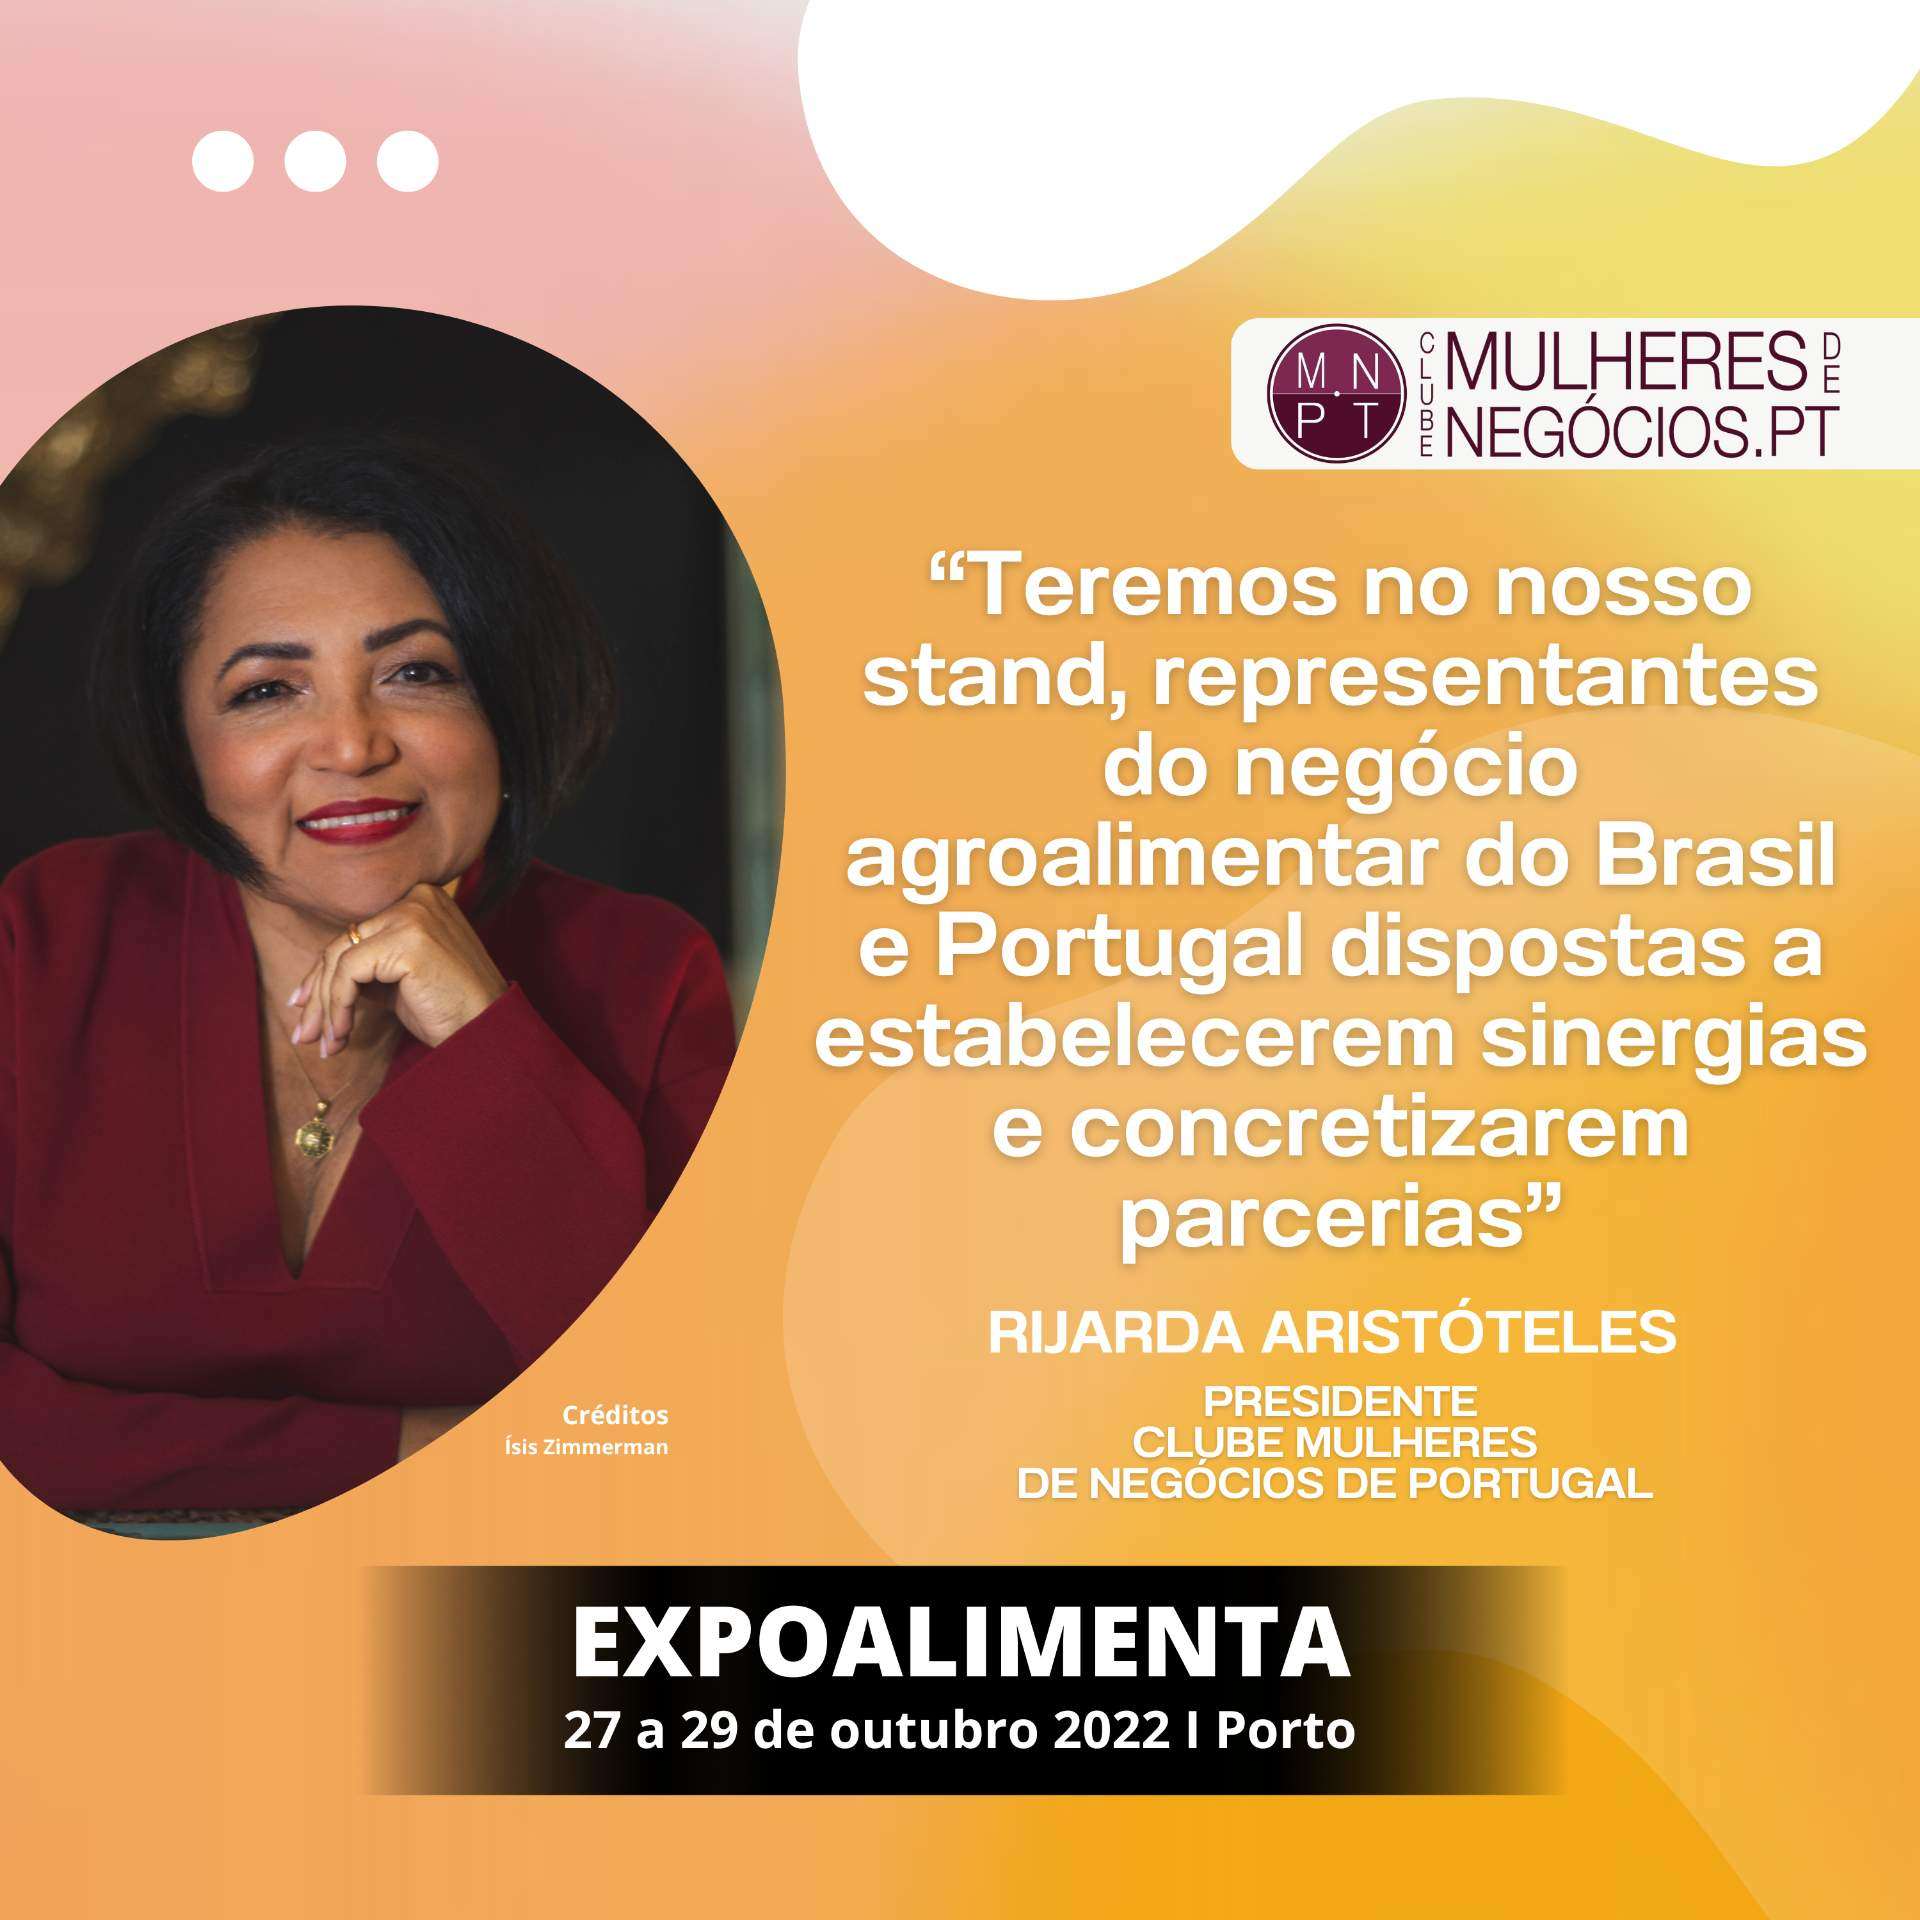 Clube Mulheres de Negócios de Portugal: “Teremos no nosso Stand, representantes do negócio agroalimentar do Brasil e Portugal dispostas a estabelecerem sinergias e concretizarem parcerias”